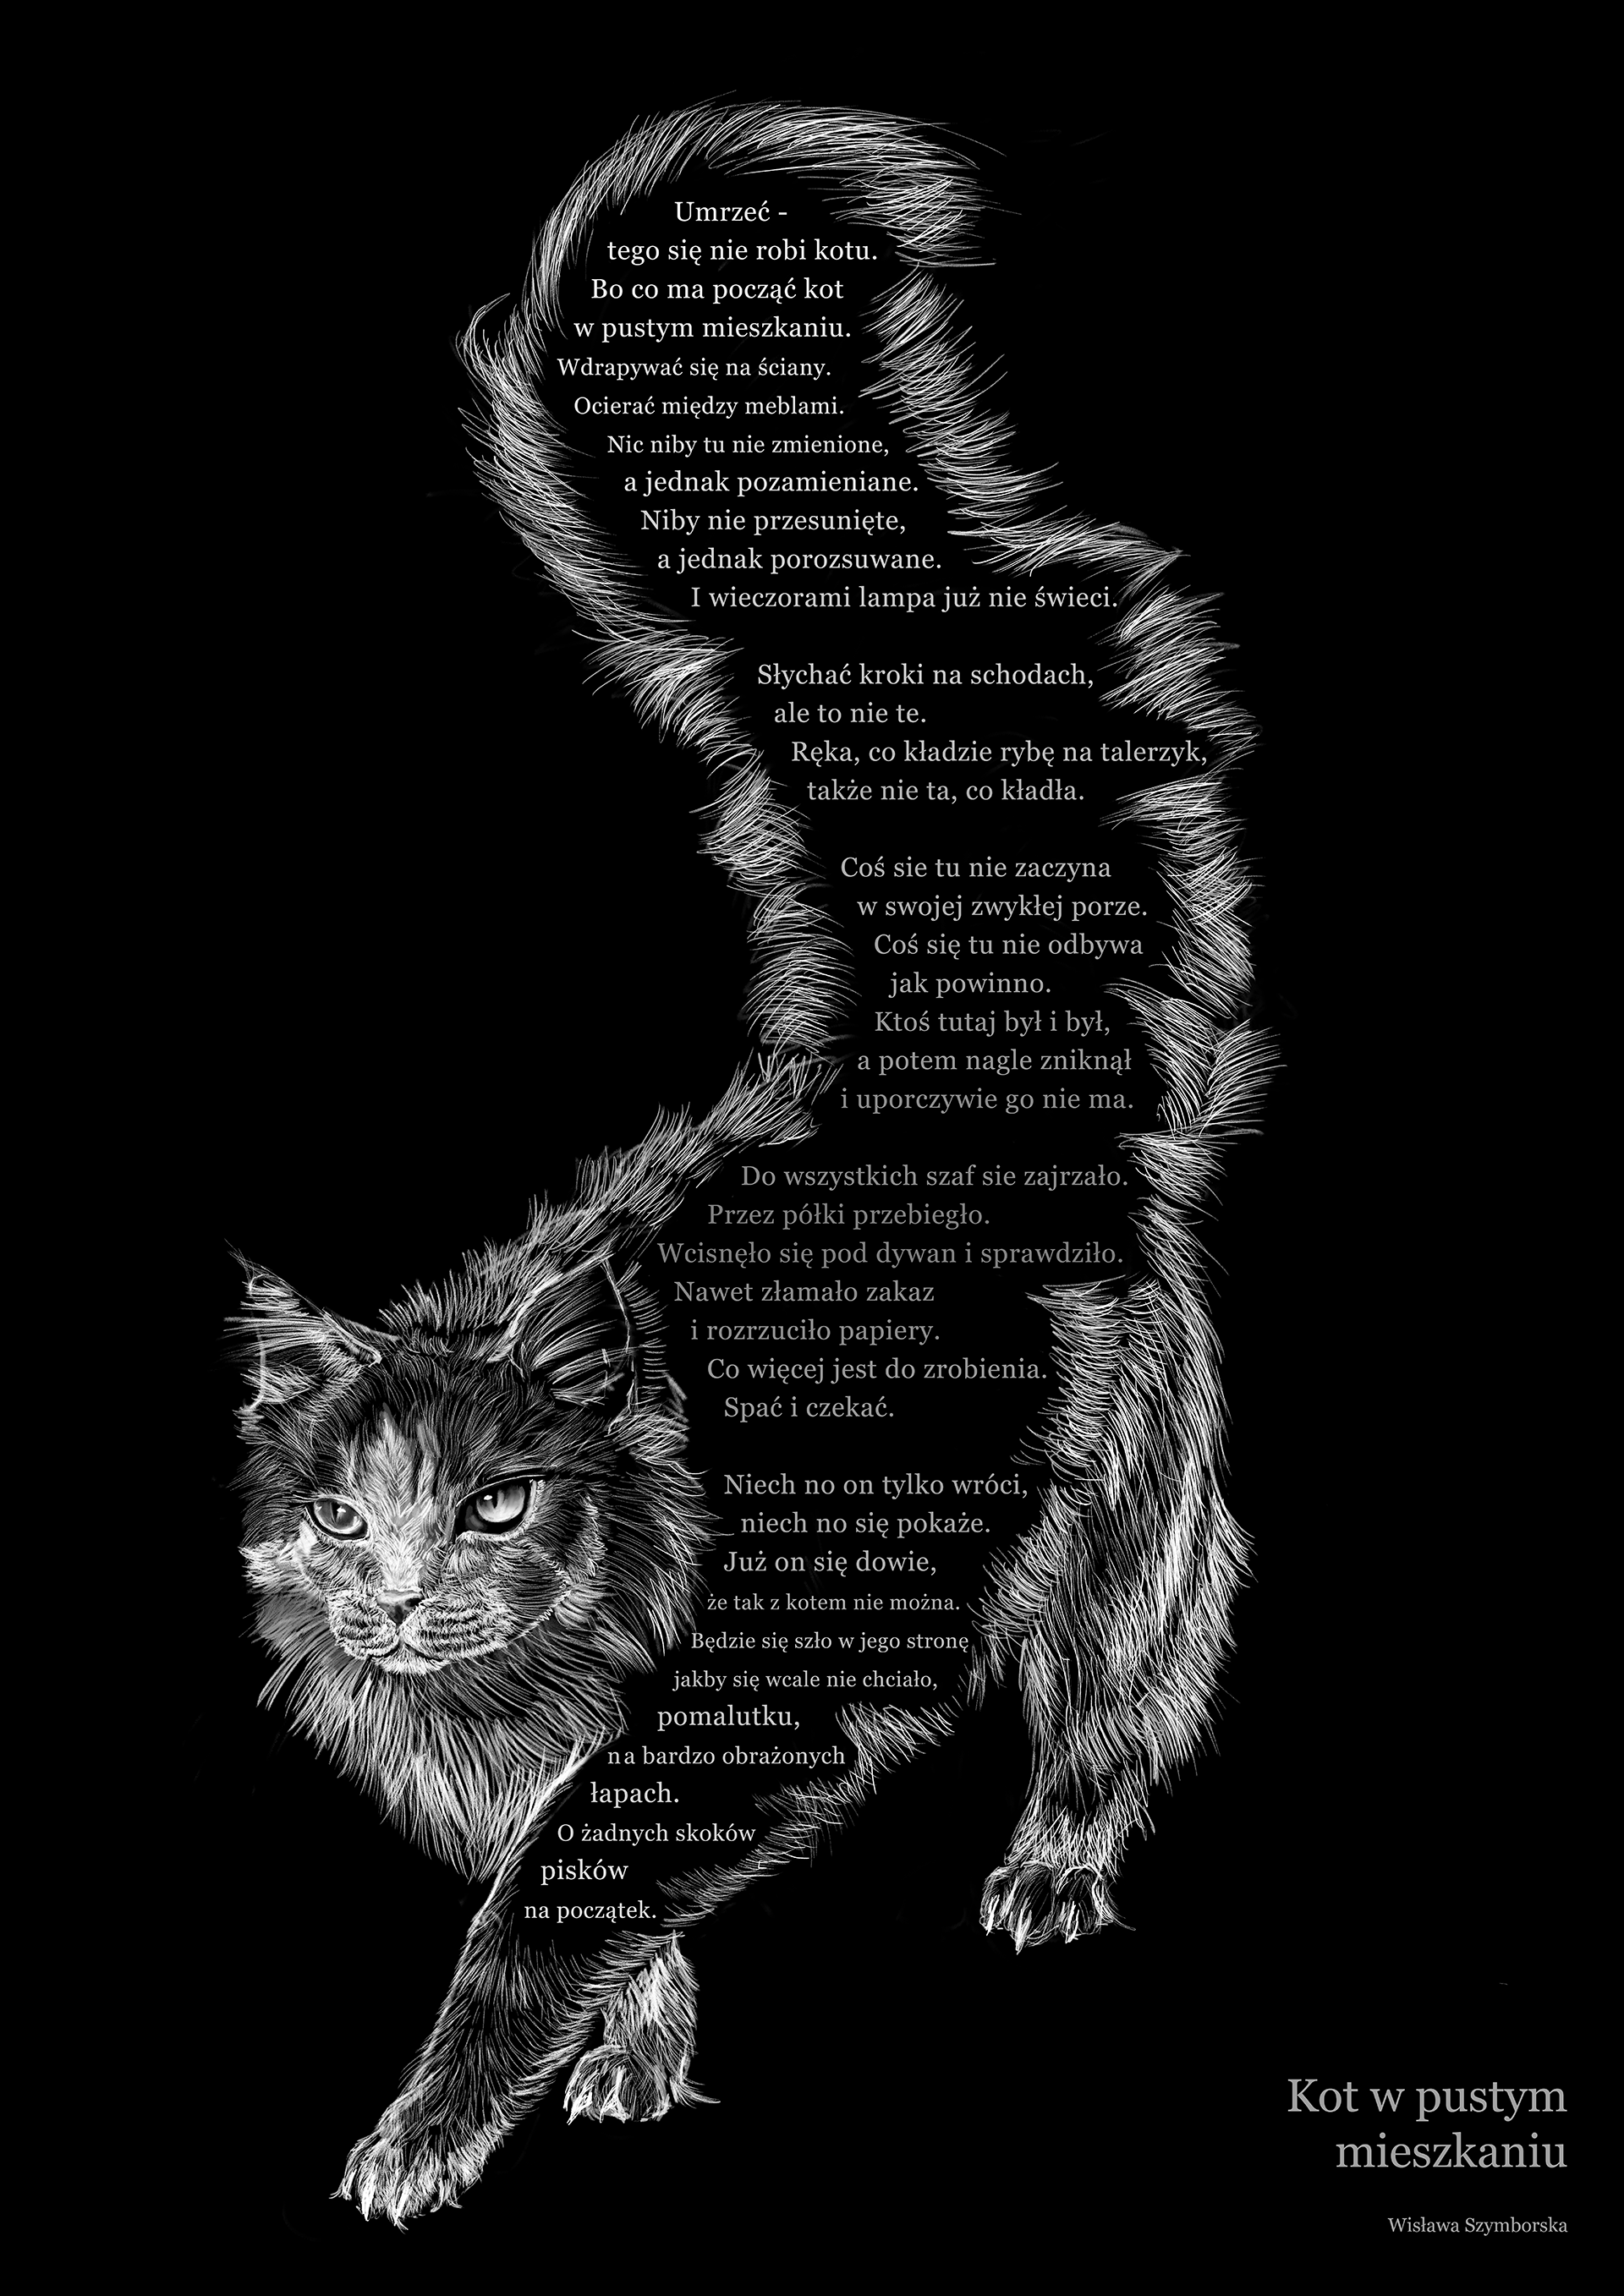 Czarno-biała kompozycja graficzna ukazująca postać kota z odpowiednio wkomponowanym tekstem wiersza Wisławy Szymborskiej pt. „Kot w pustym mieszkaniu”.